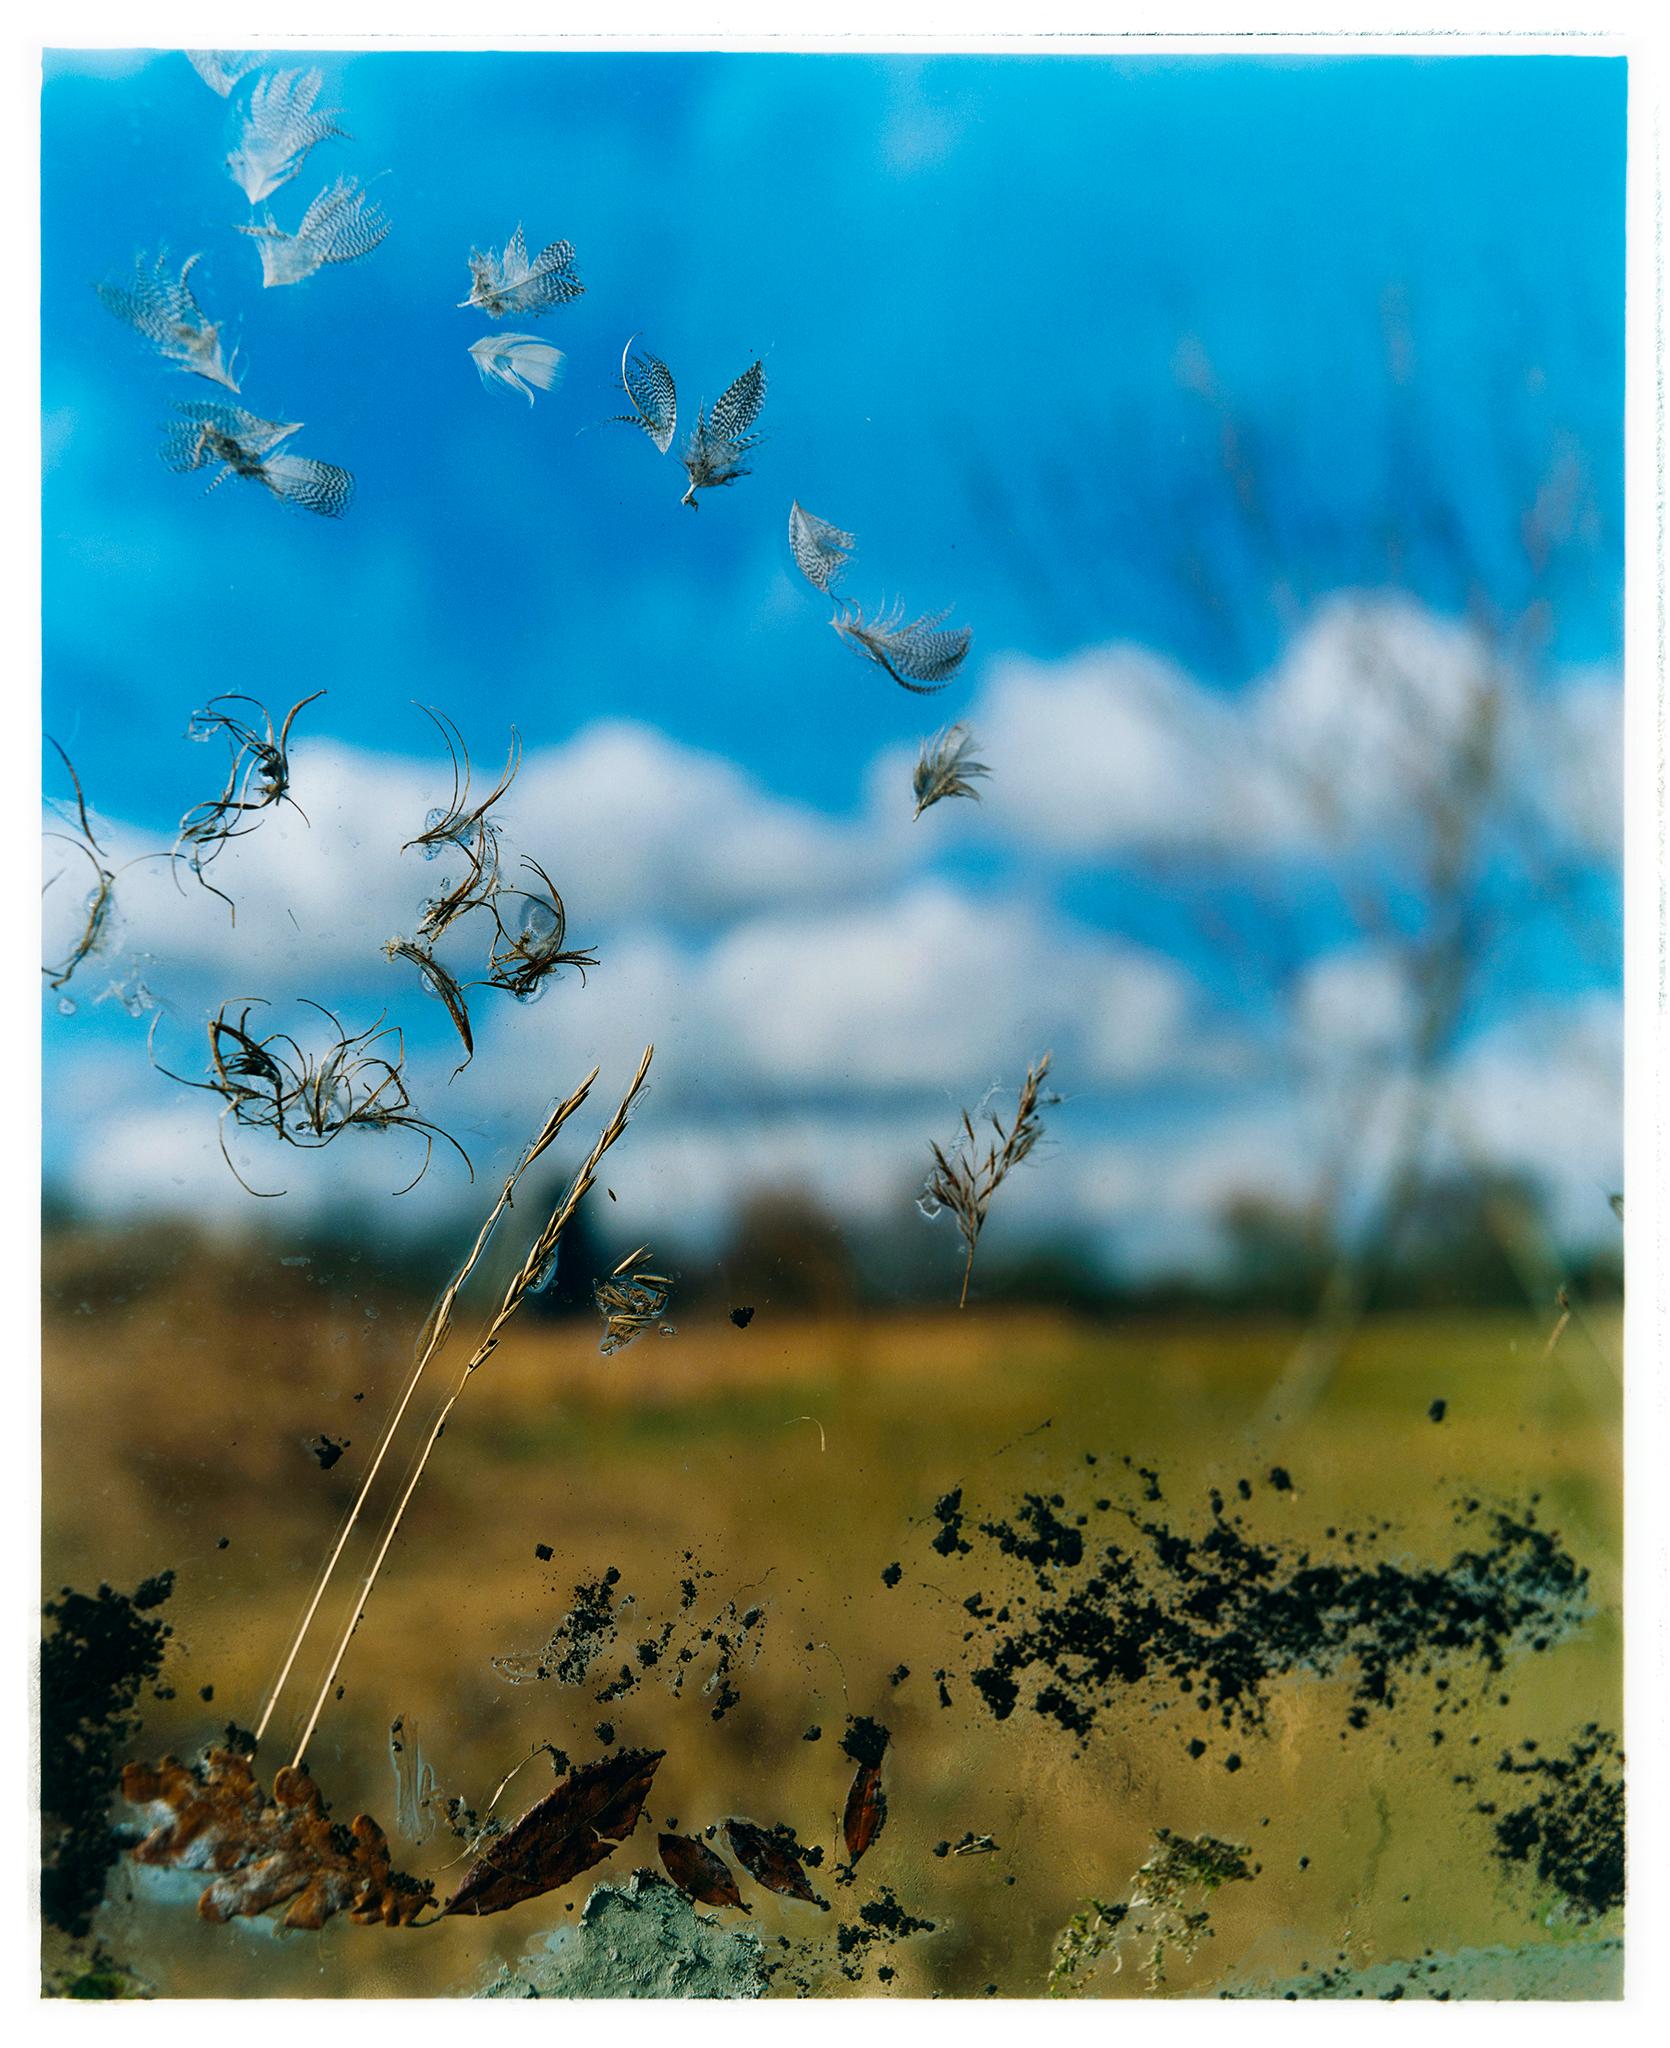 Richard Heeps Landscape Photograph - Jane Frost's 'Traces', Wicken Fen, Cambridgeshire - landscape nature photograph